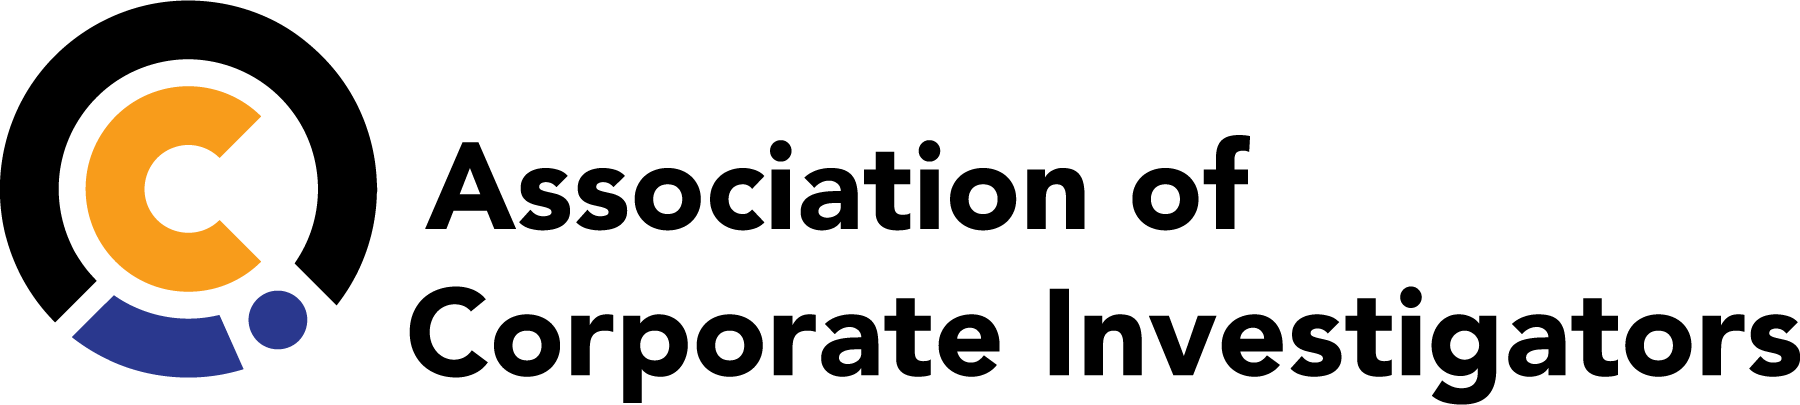 Association of Corporate Investigators